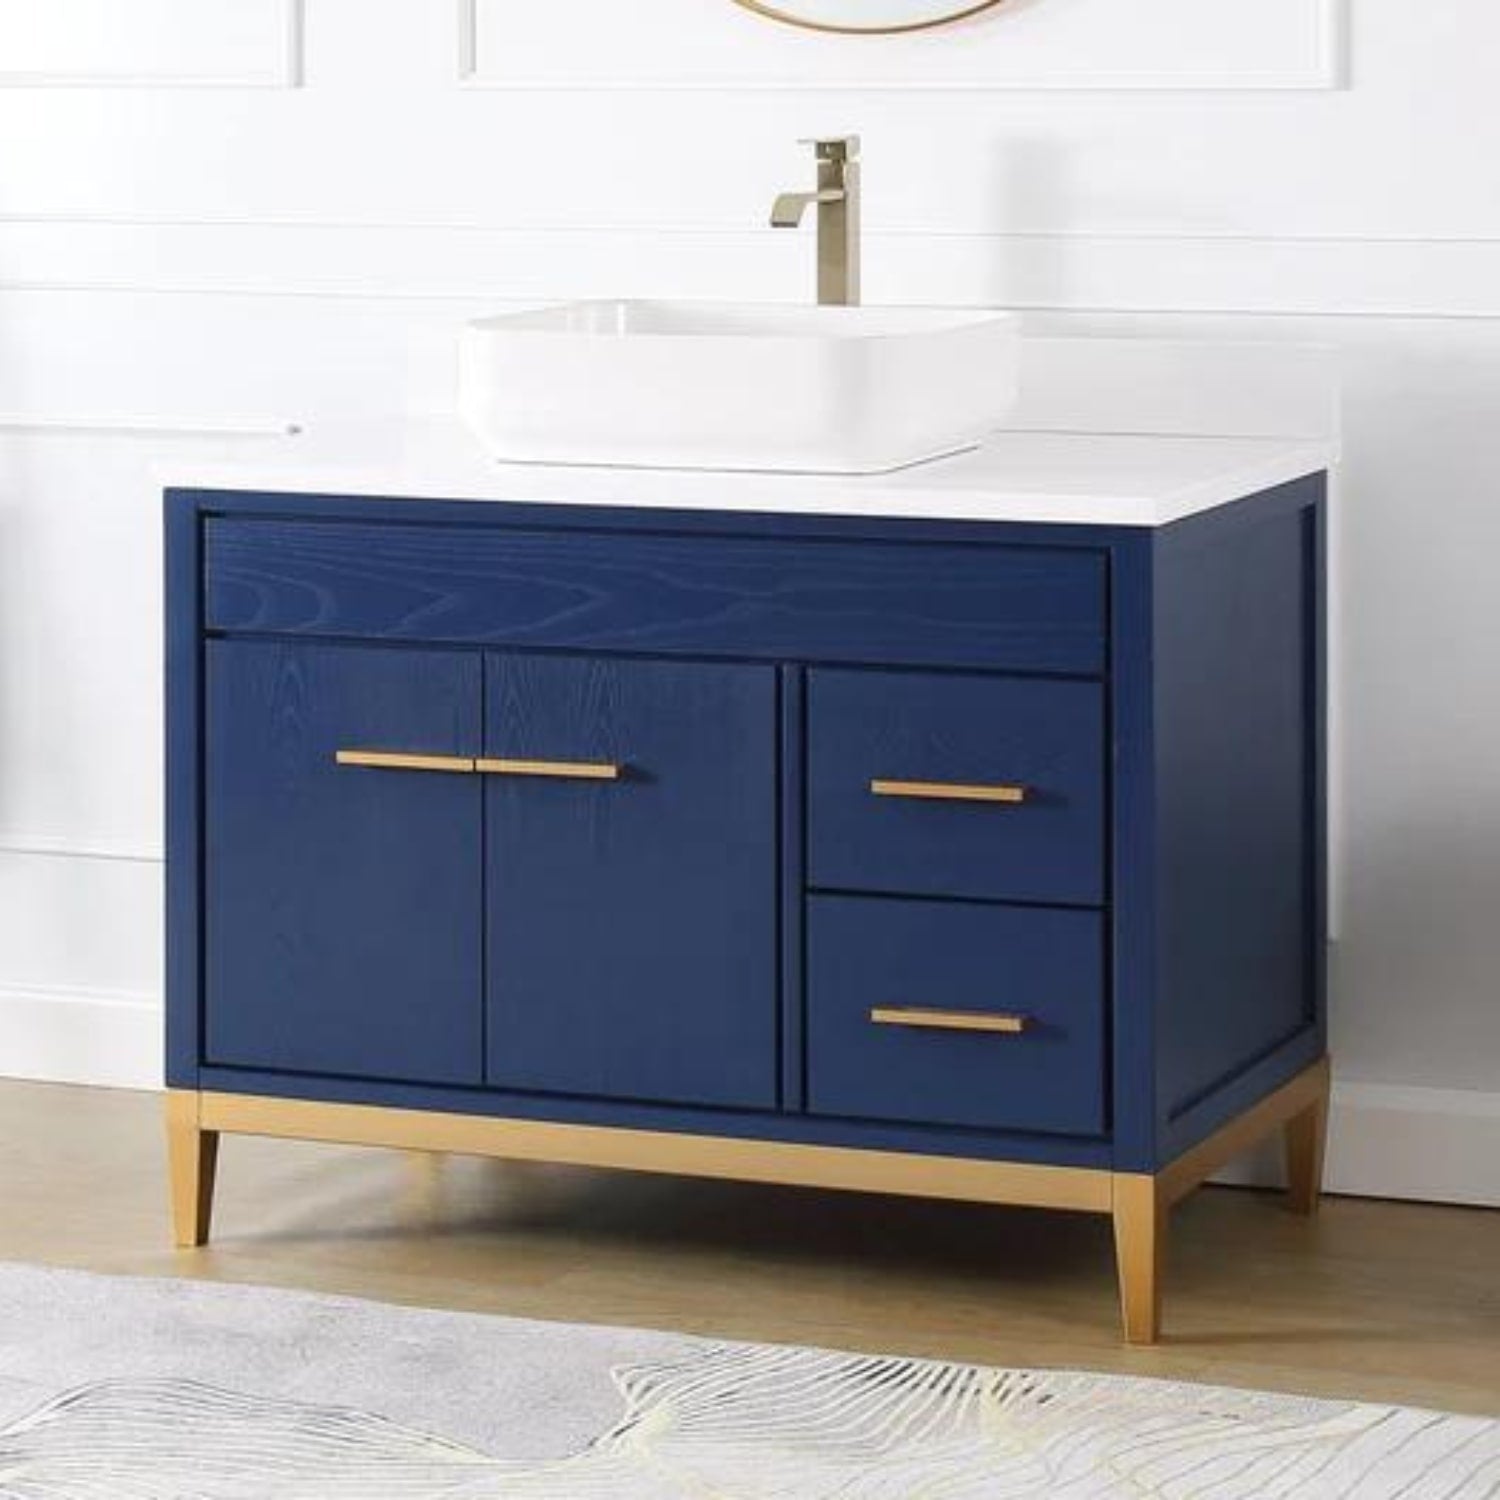 Beatrice 42" Navy Blue Bathroom Vanity with White Quartz Top - Contemporary Bathroom Vanity